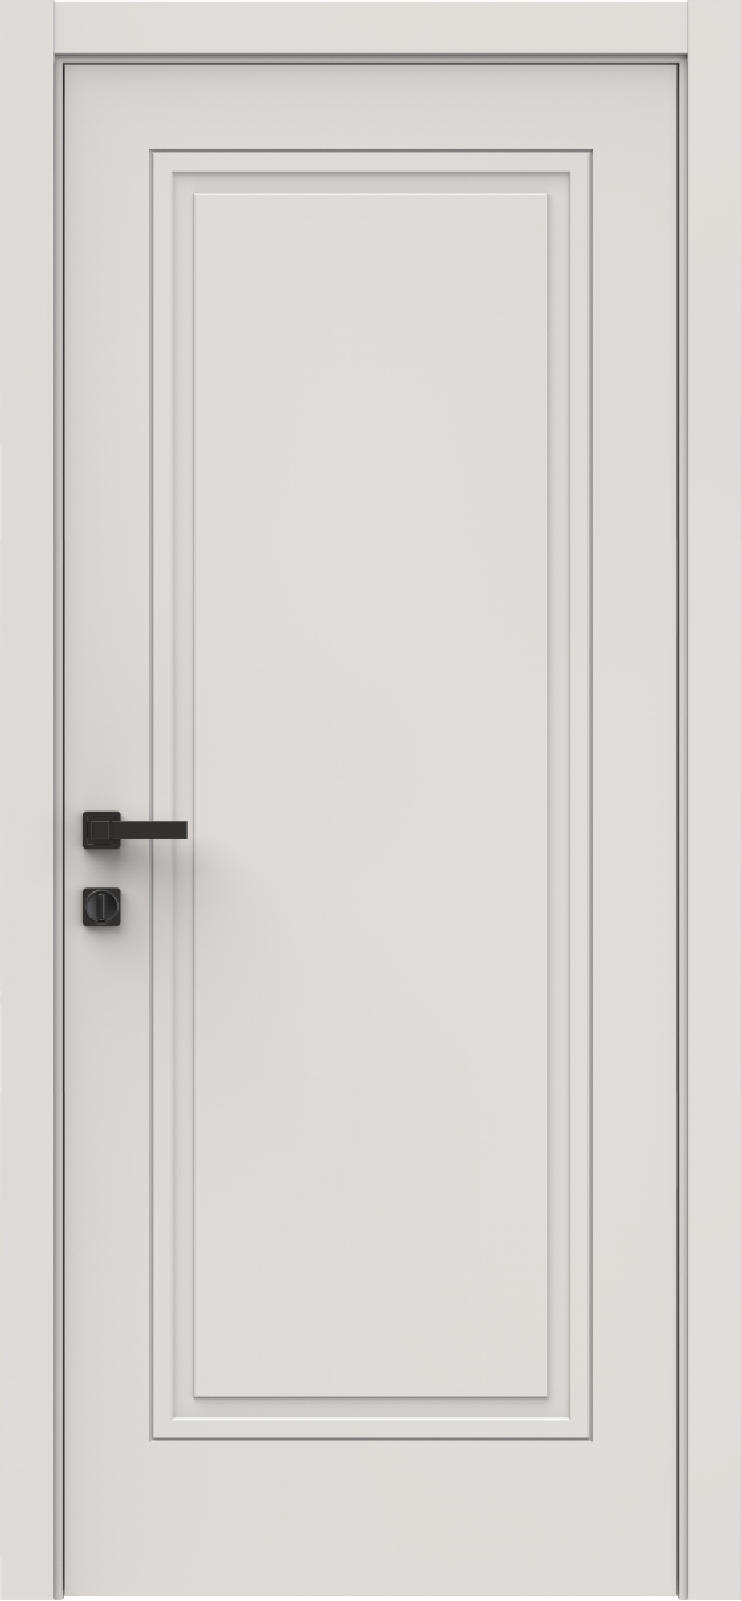 Questdoors Межкомнатная дверь QID1, арт. 29414 - фото №1